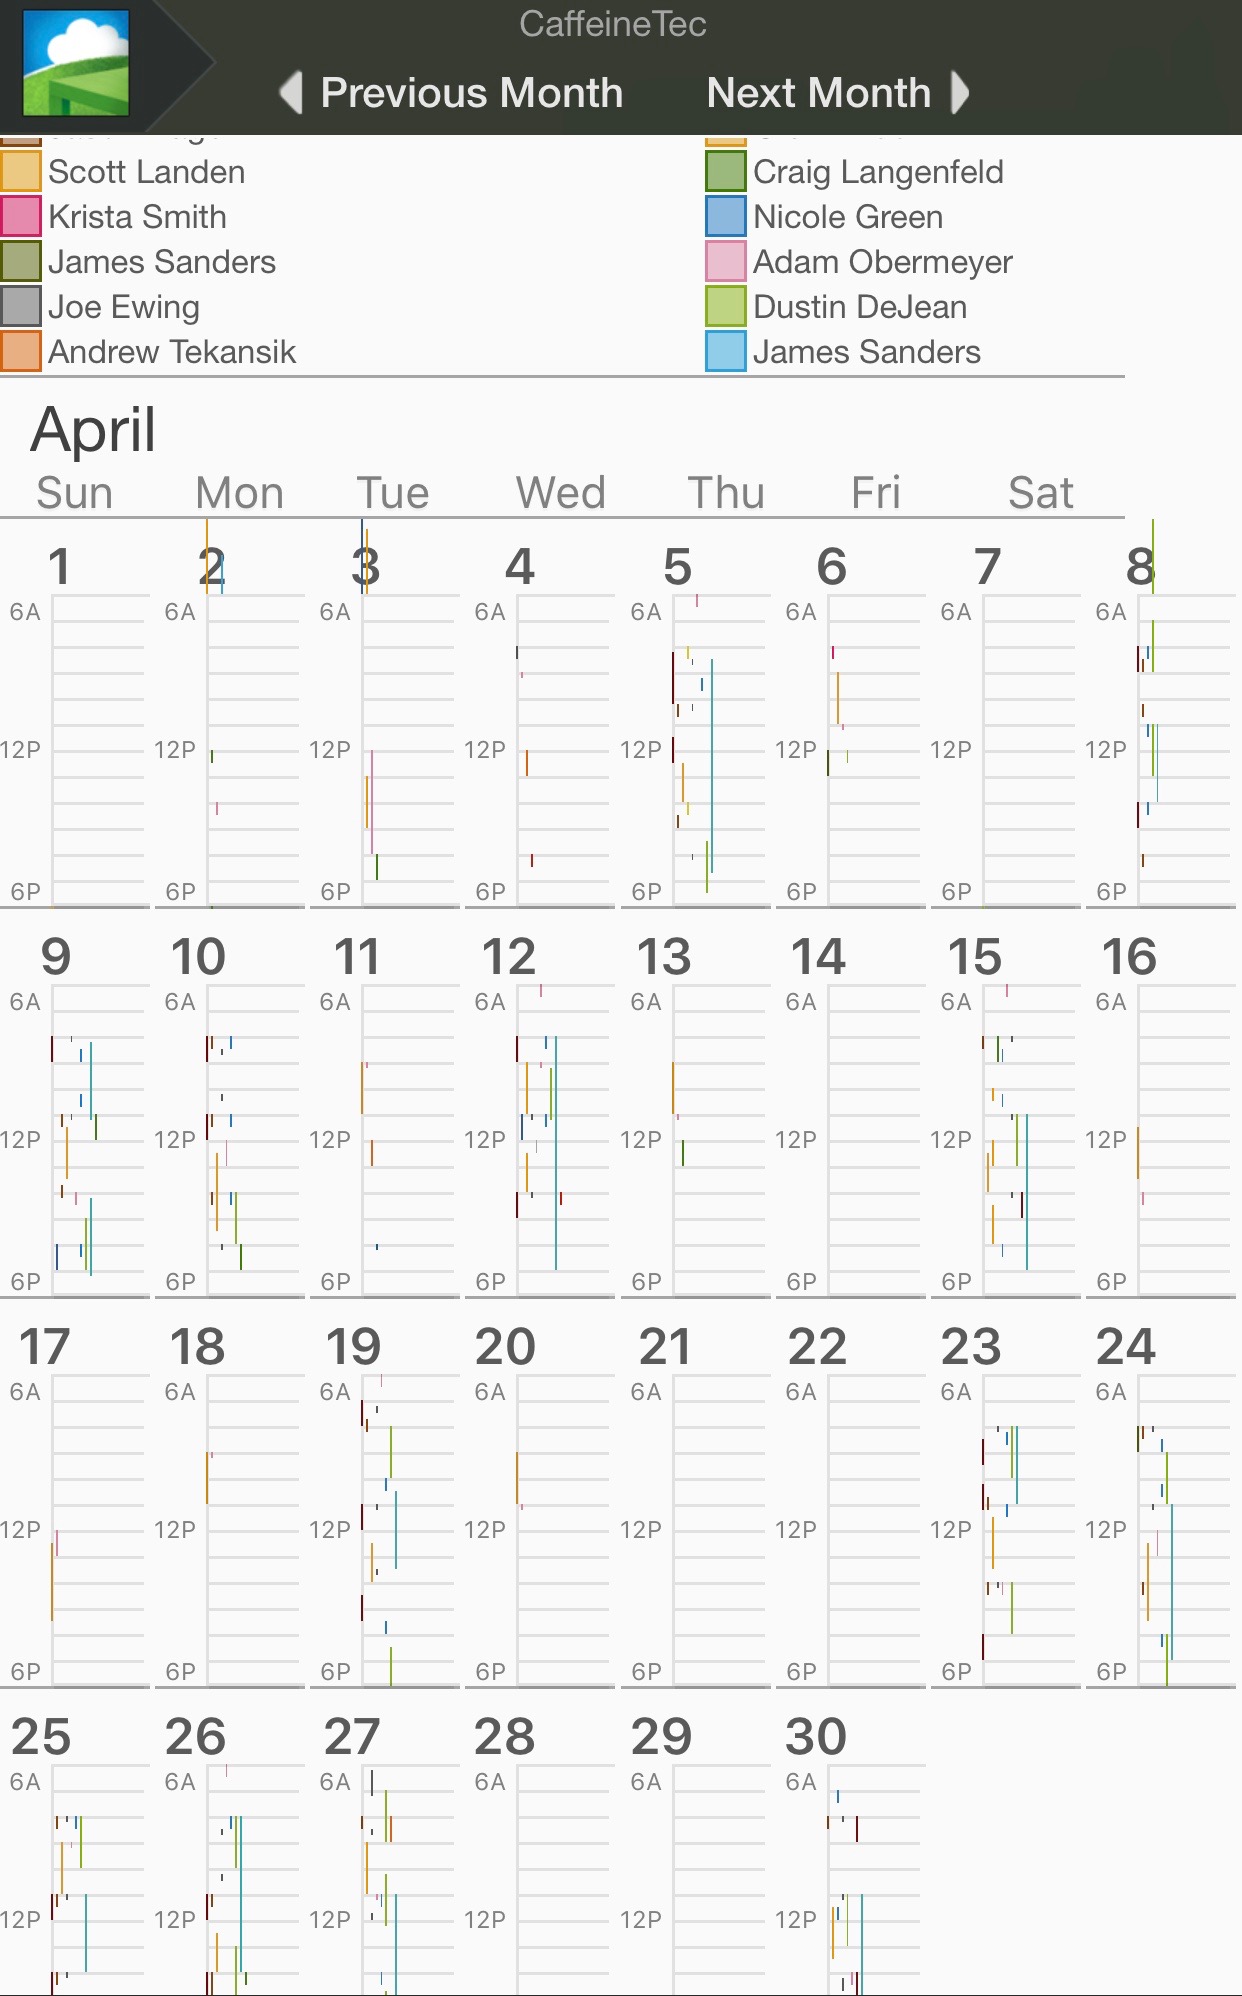 iOS Calendar View